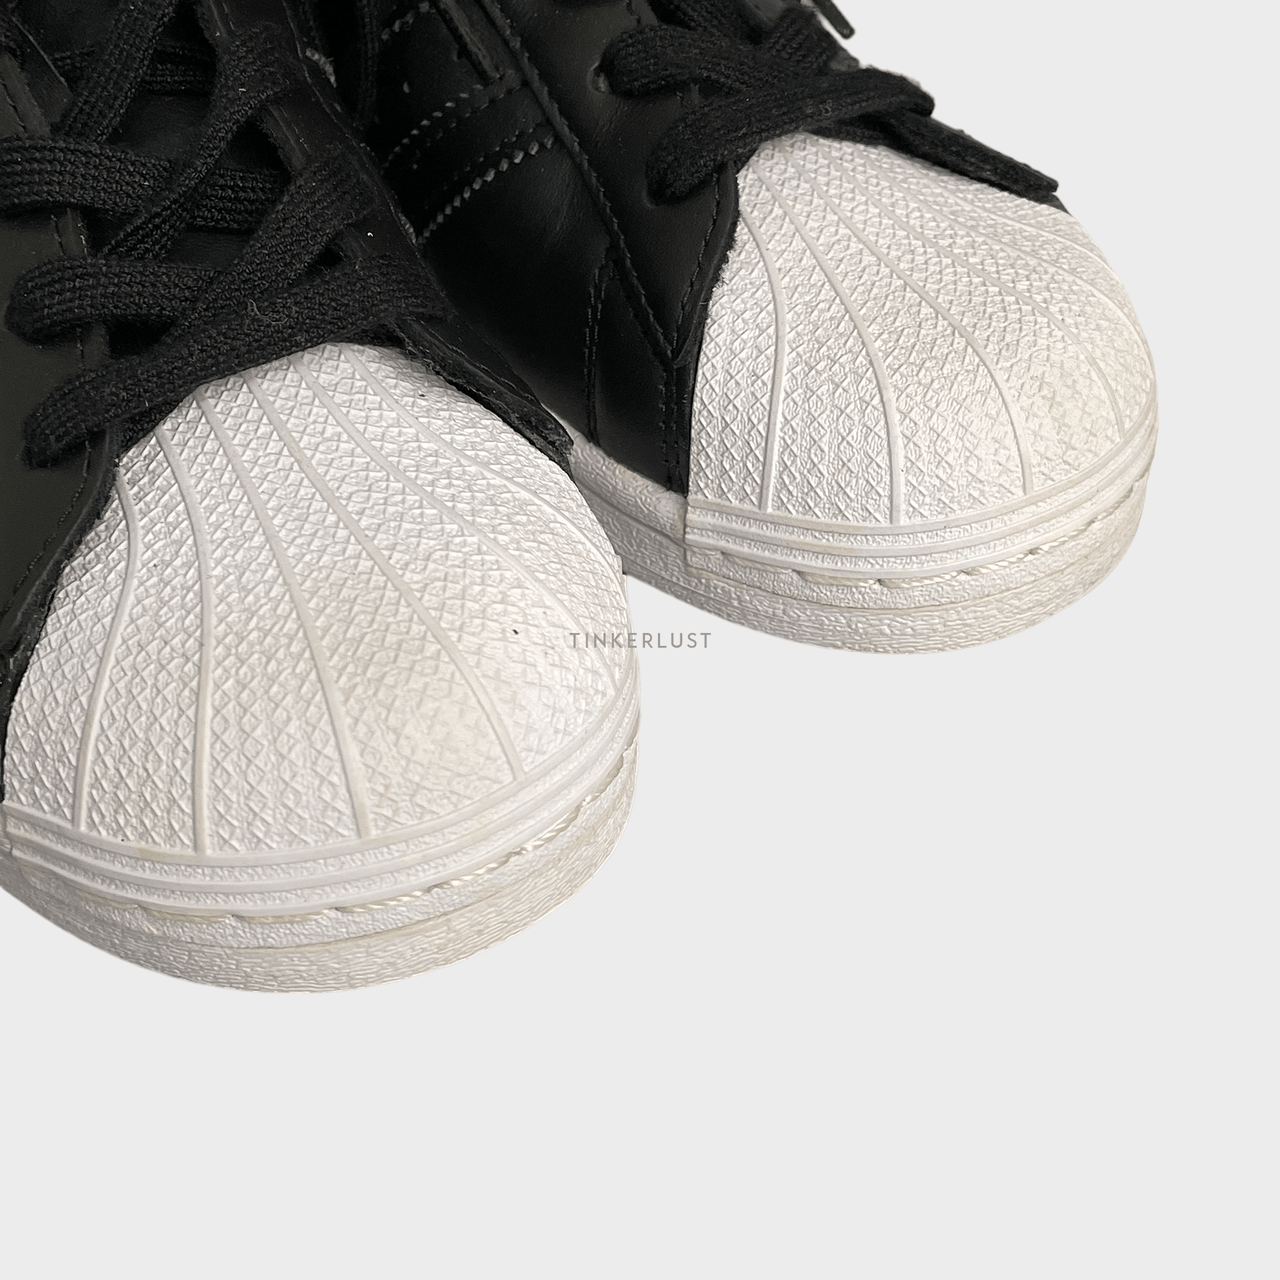 Adidas Superstar Core Black Stud Sneakers